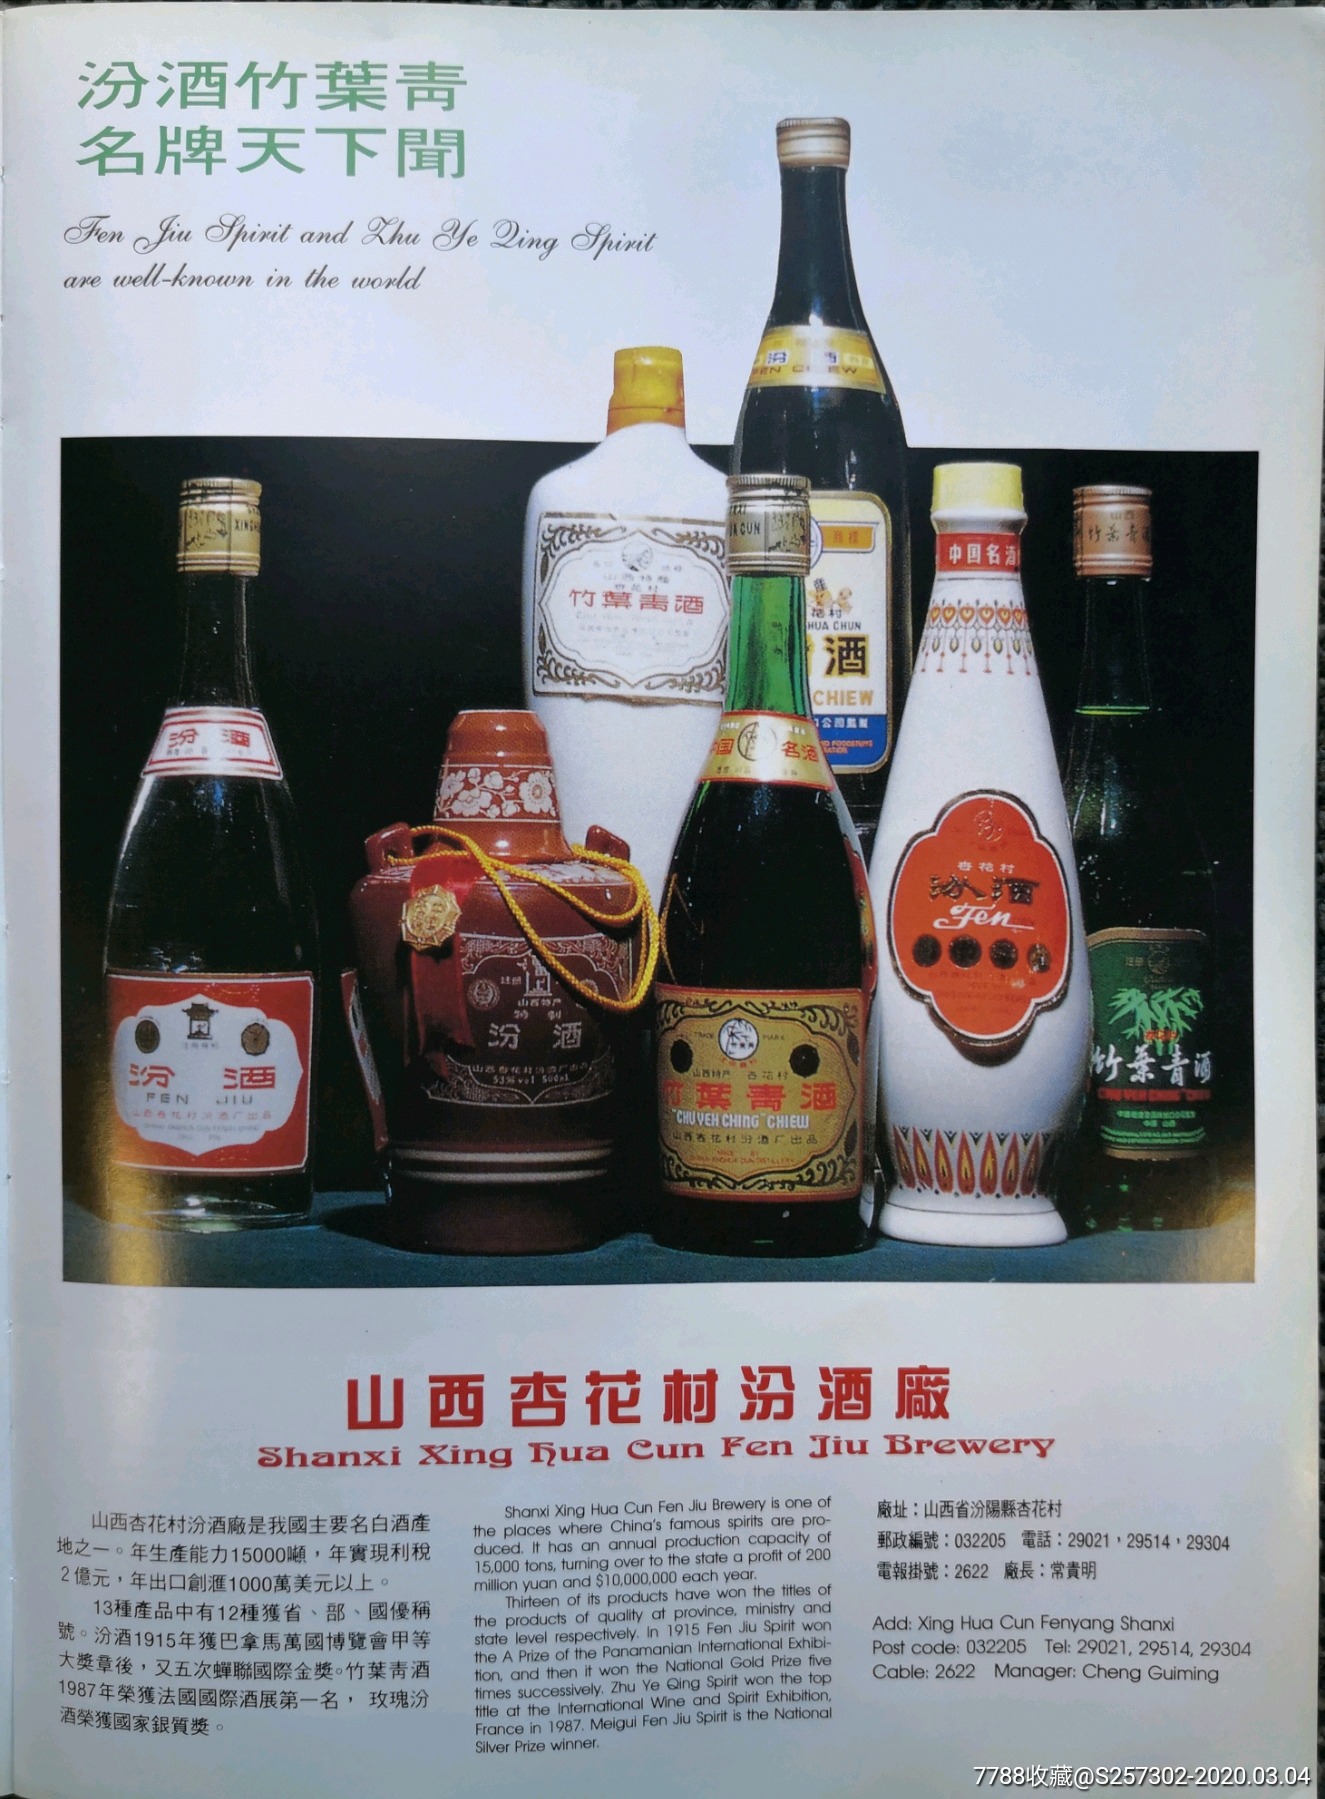 汾酒,竹叶青酒广告,山西杏花村酒厂,1990年老广告,大16开,稀缺,收藏.